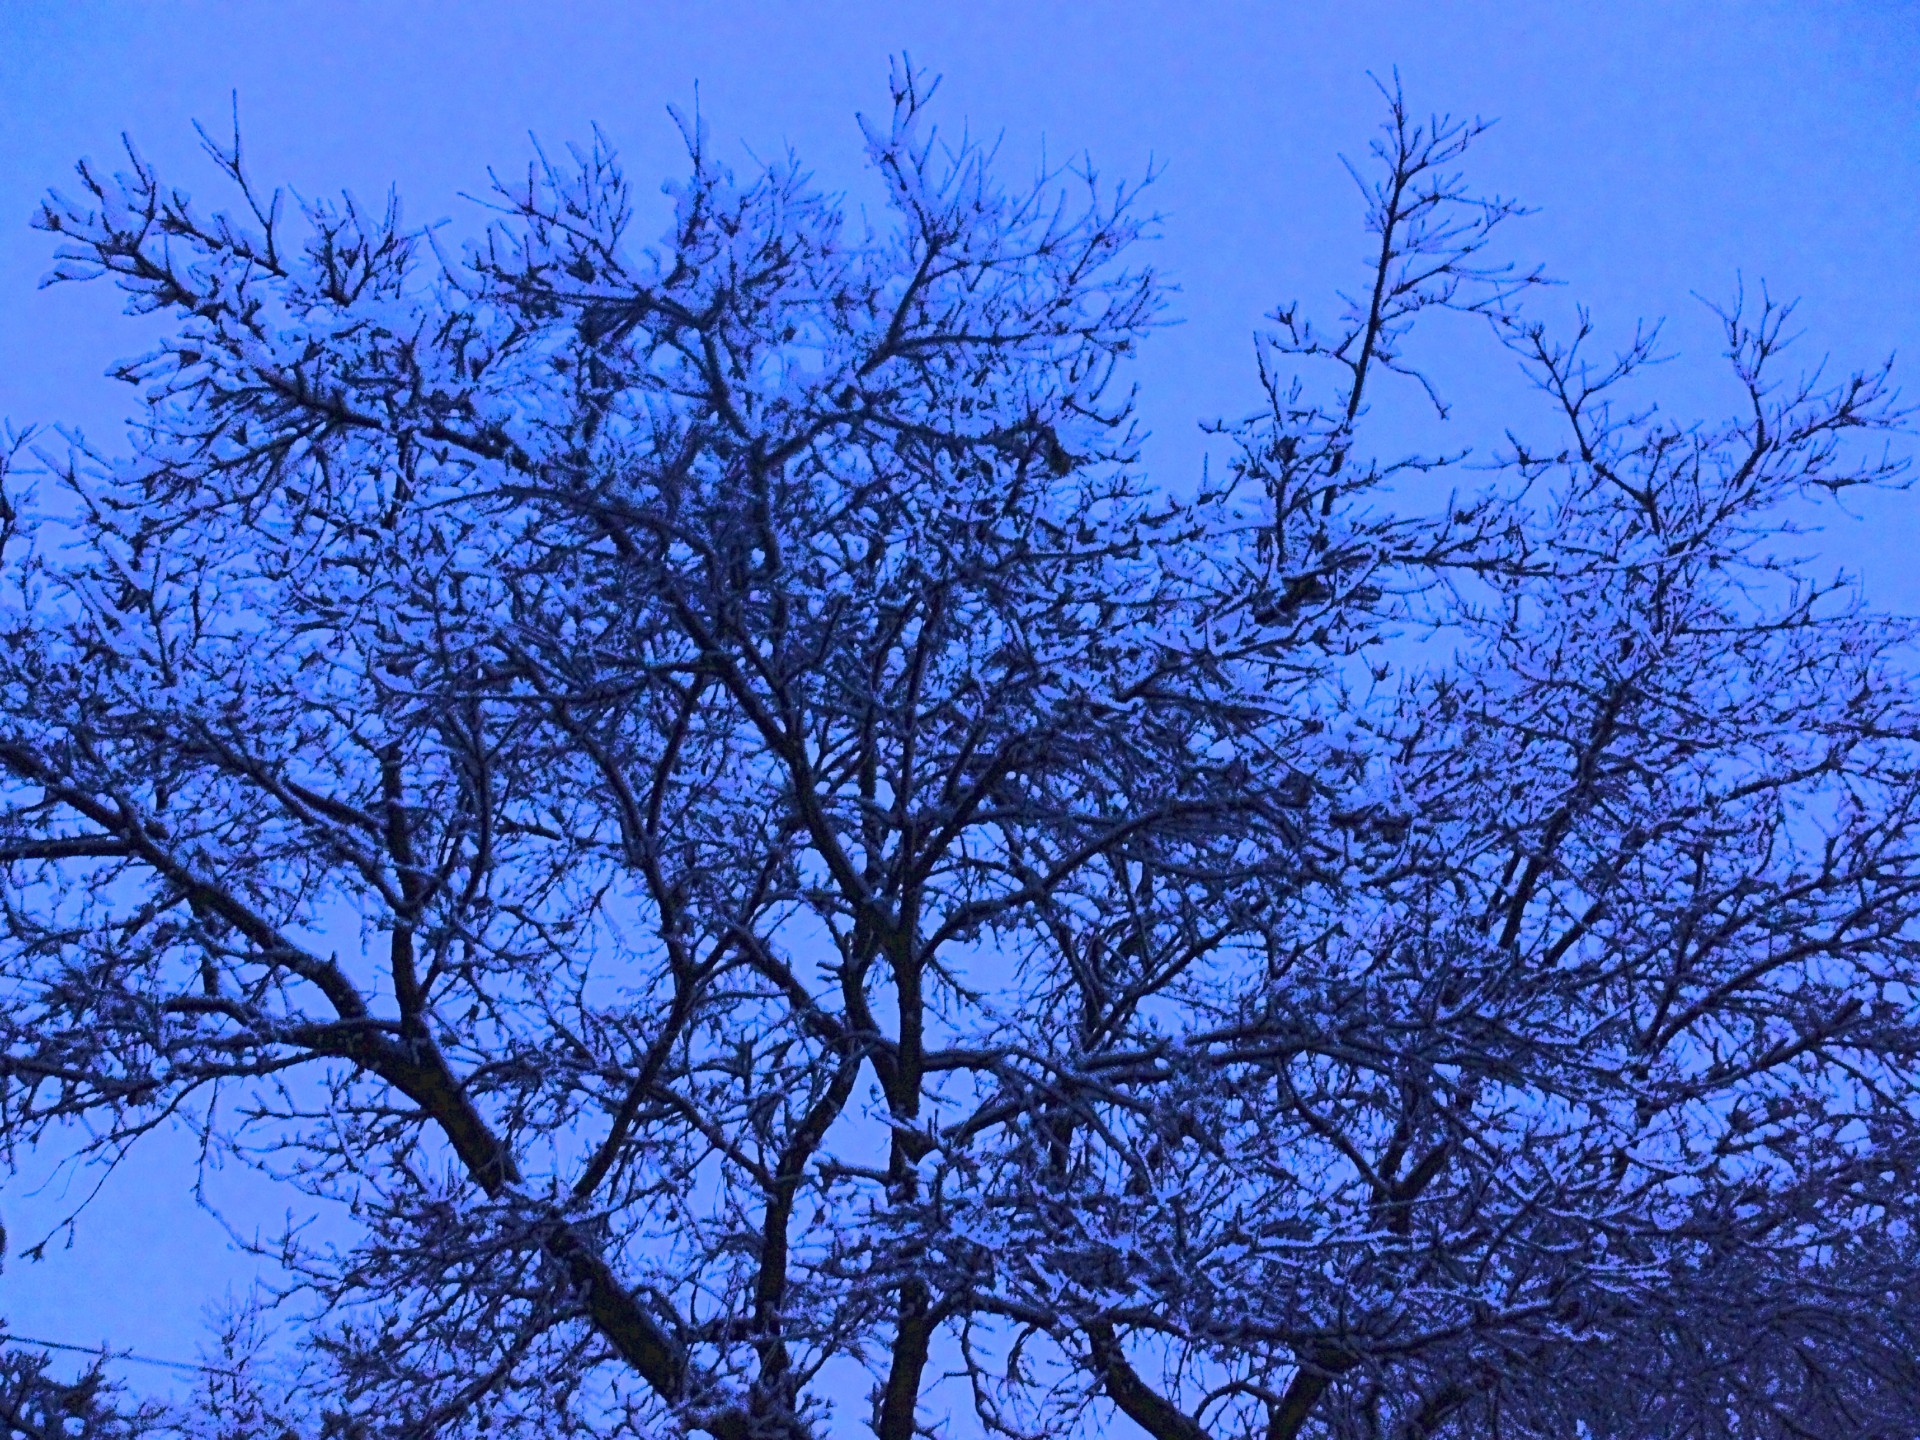 Snowy Tree At Dusk